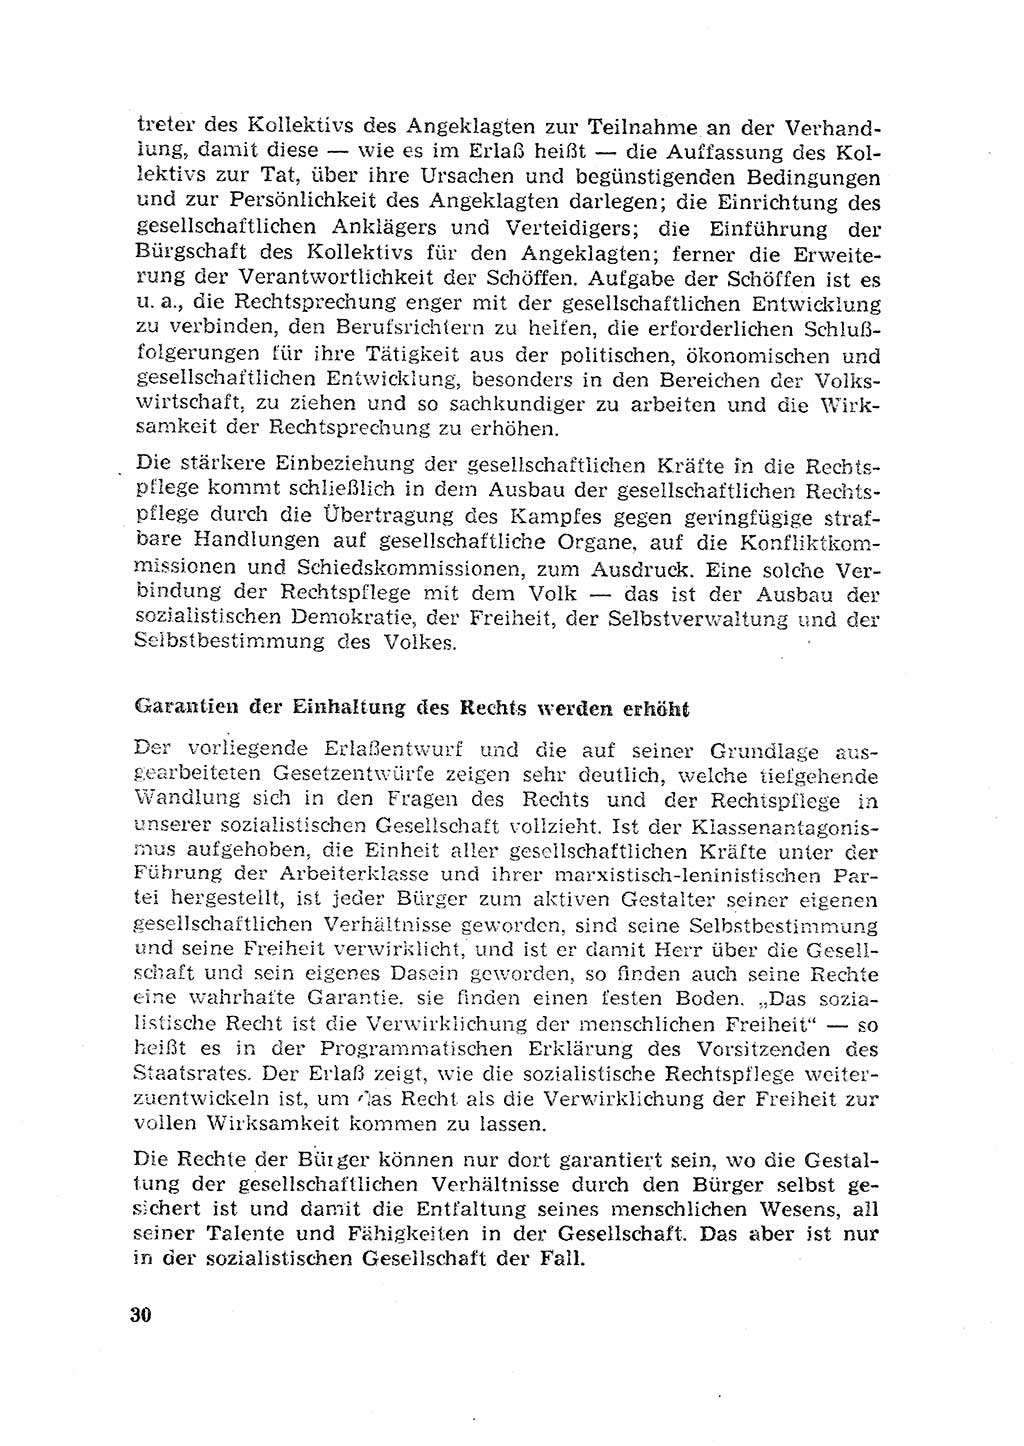 Rechtspflegeerlaß [Deutsche Demokratische Republik (DDR)] 1963, Seite 30 (R.-Pfl.-Erl. DDR 1963, S. 30)